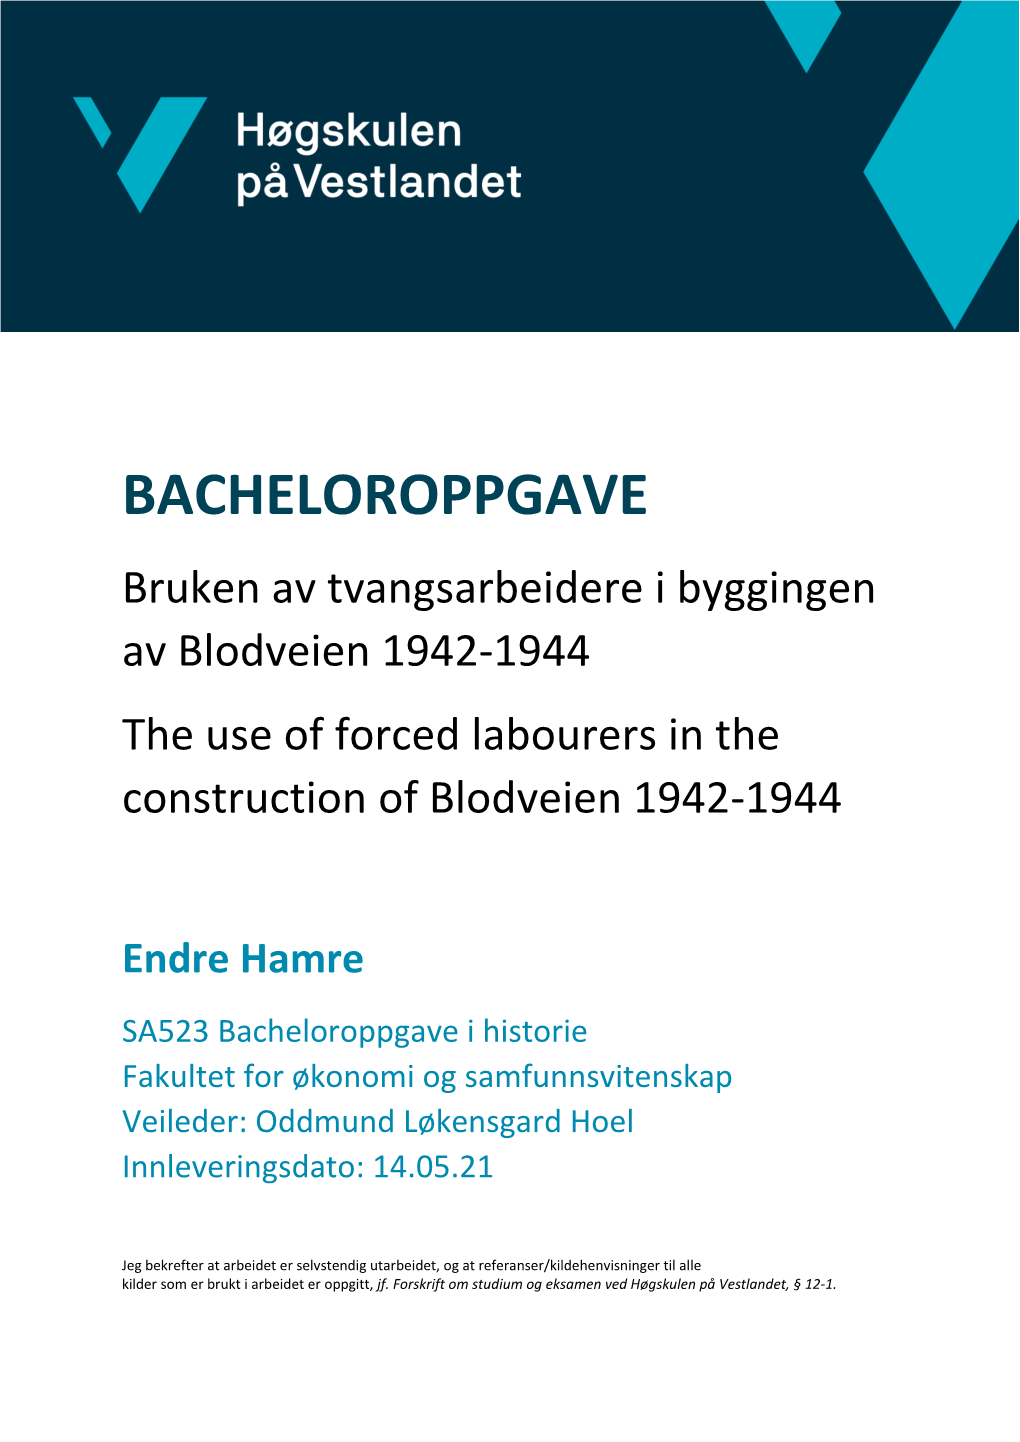 BACHELOROPPGAVE Bruken Av Tvangsarbeidere I Byggingen Av Blodveien 1942-1944 the Use of Forced Labourers in the Construction of Blodveien 1942-1944